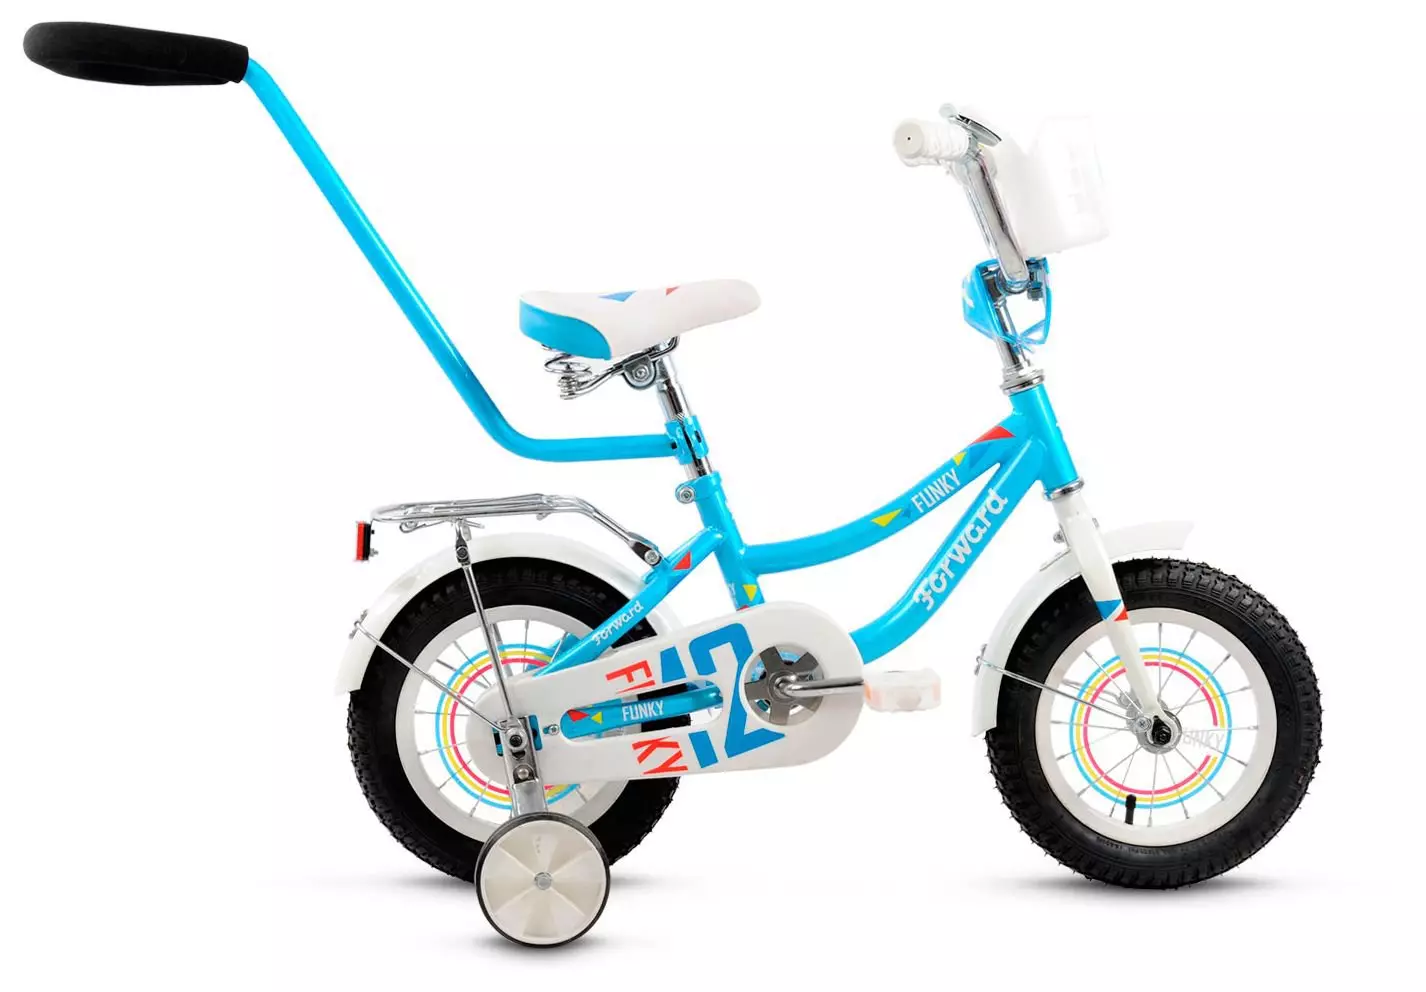 Bicicletas para niños Adelante: Bicicleta Descripción general de la serie COSMO y barrio, modelos plegables para niñas y niños. 8606_14